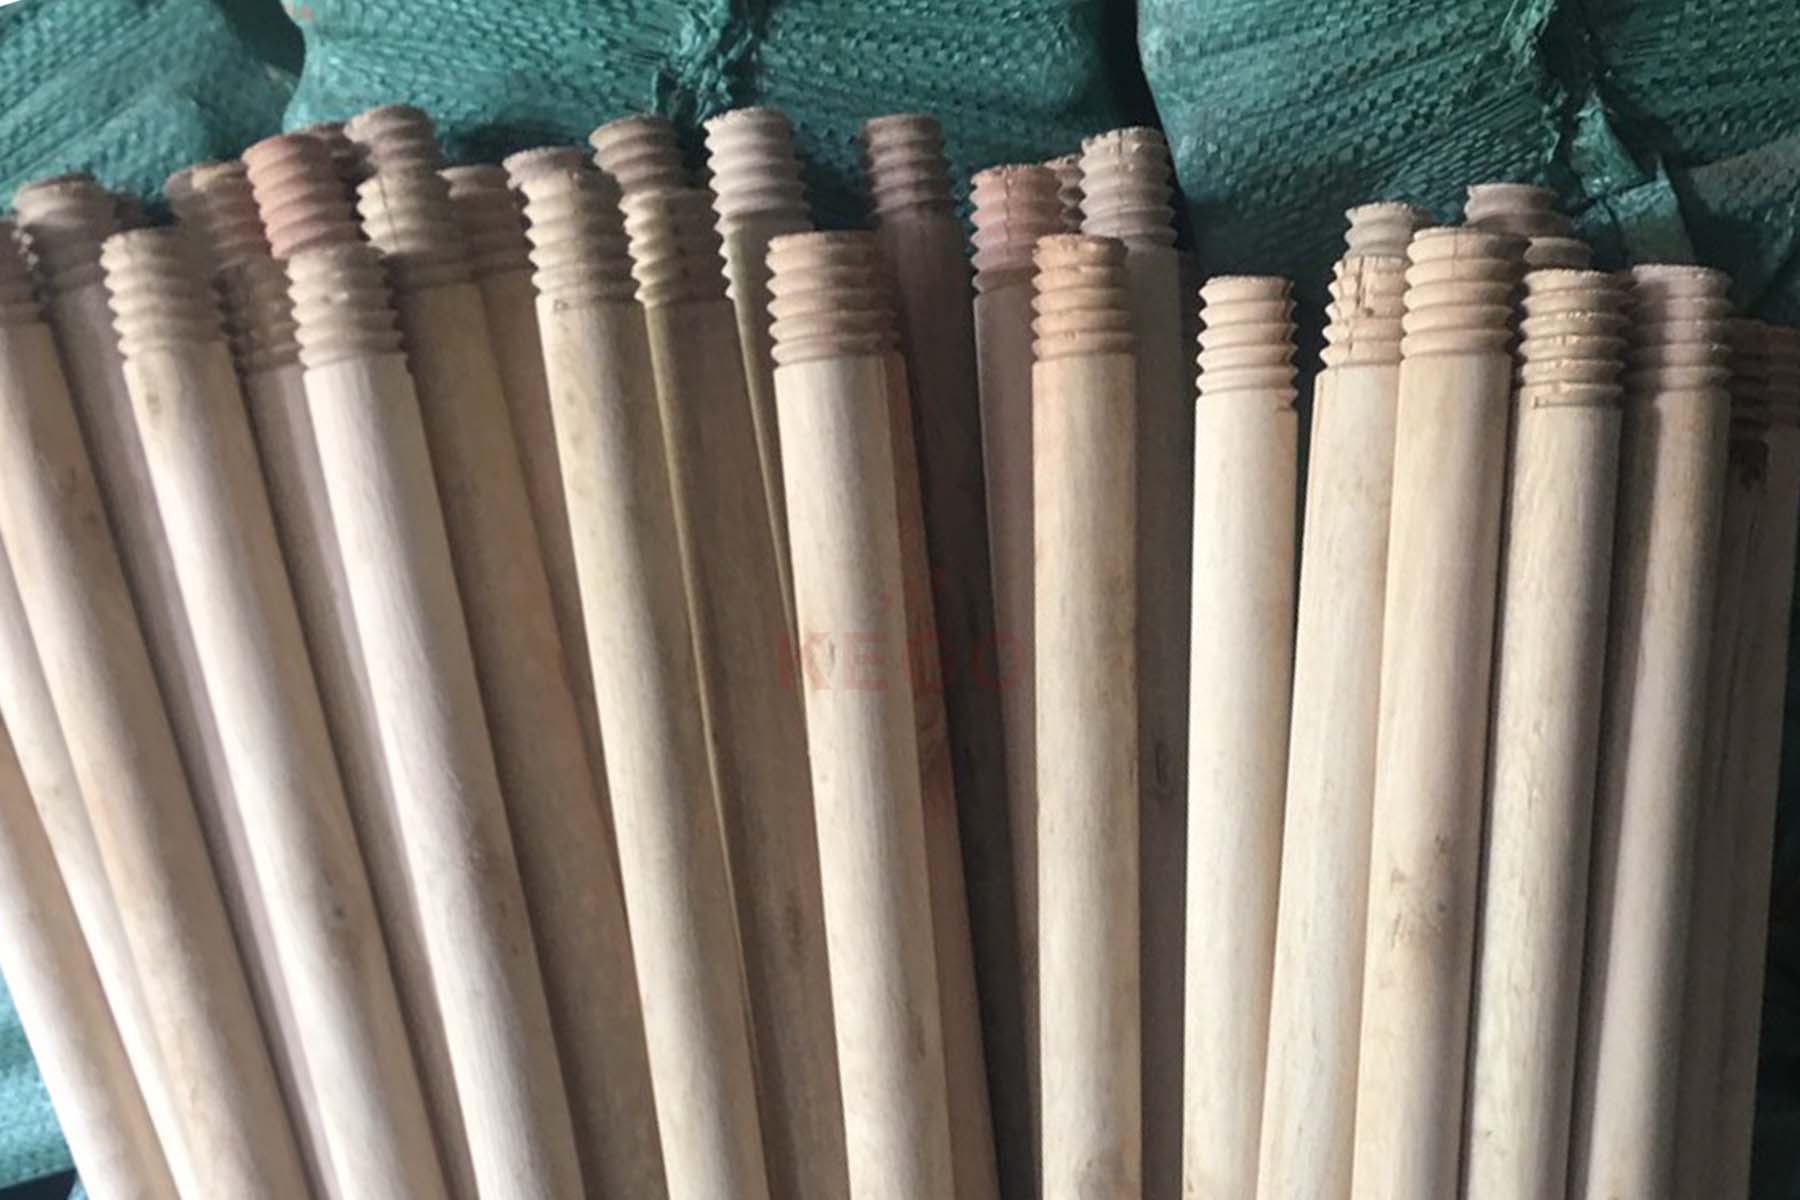 https://kego.com.vn/wp-content/uploads/2015/09/wooden-broom-handle-kego-18.jpg